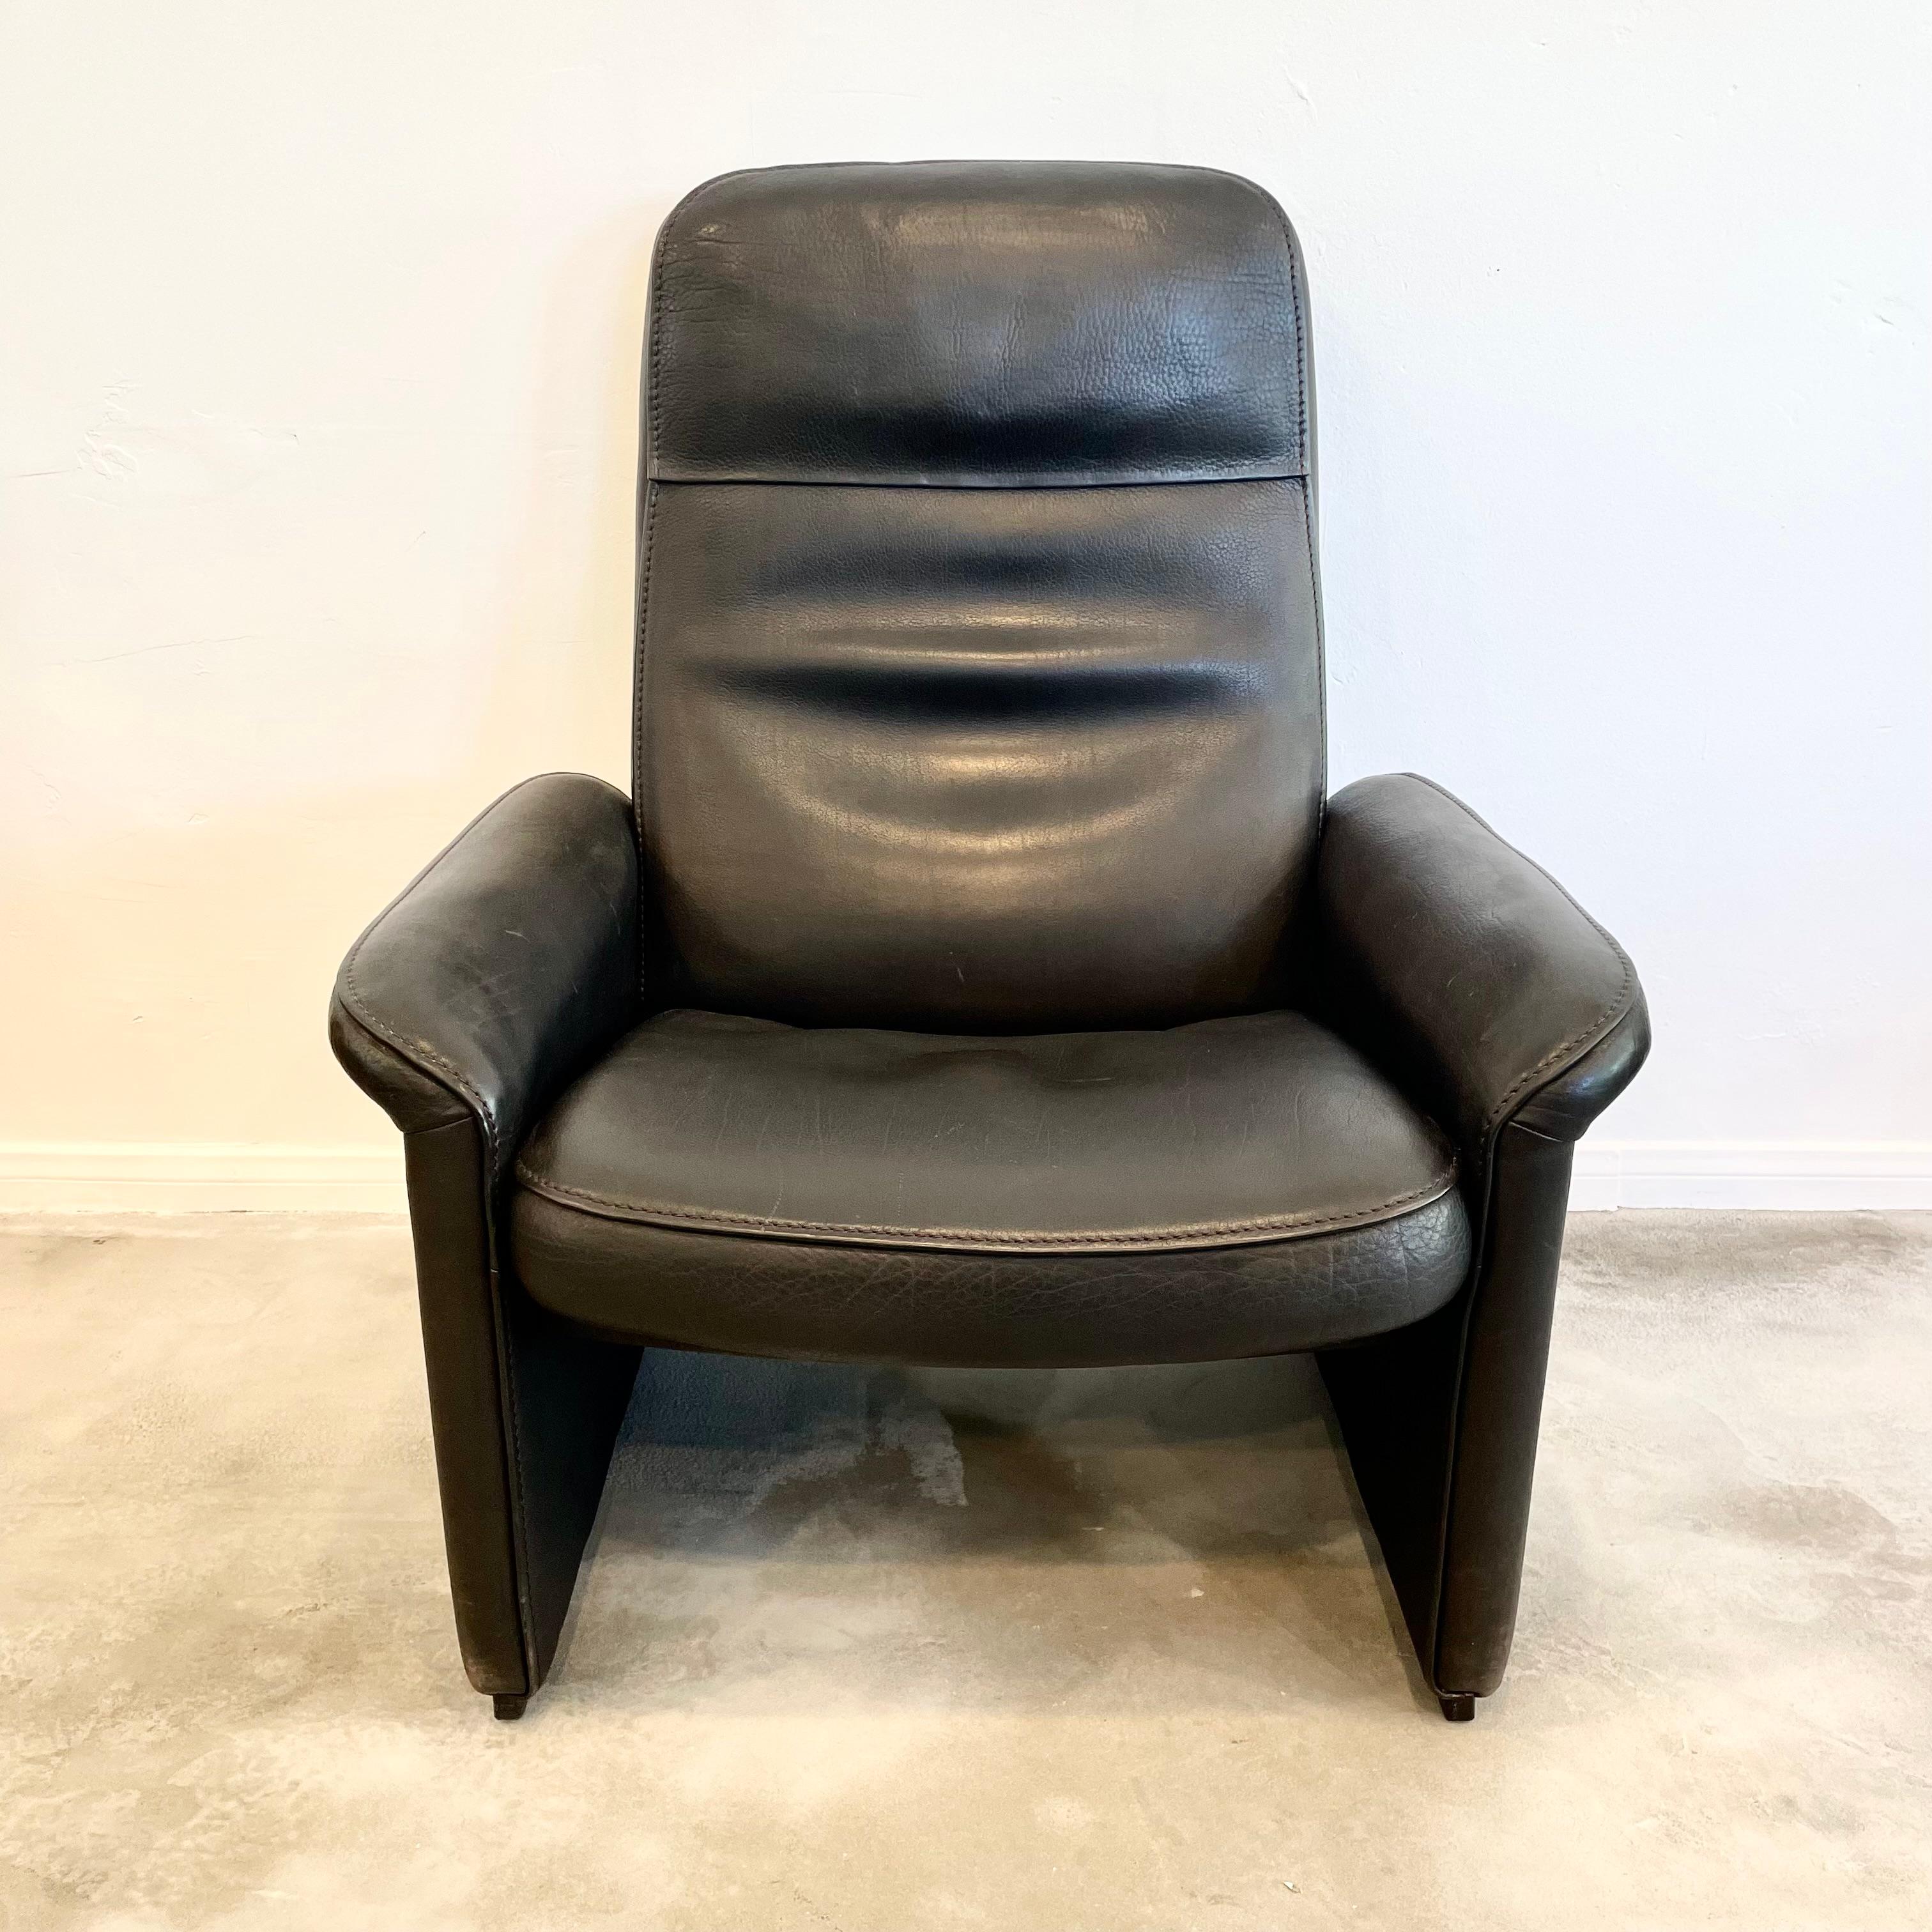 Loungesessel von De Sede aus den 1970er Jahren, Schweiz. Der Stuhl verfügt über einen Verstellmechanismus, mit dem Sie den Stuhl auf Wunsch fast flach stellen können. Äußerst komfortabel. Dieses Stück hat einen massiven Holzrahmen und ist mit